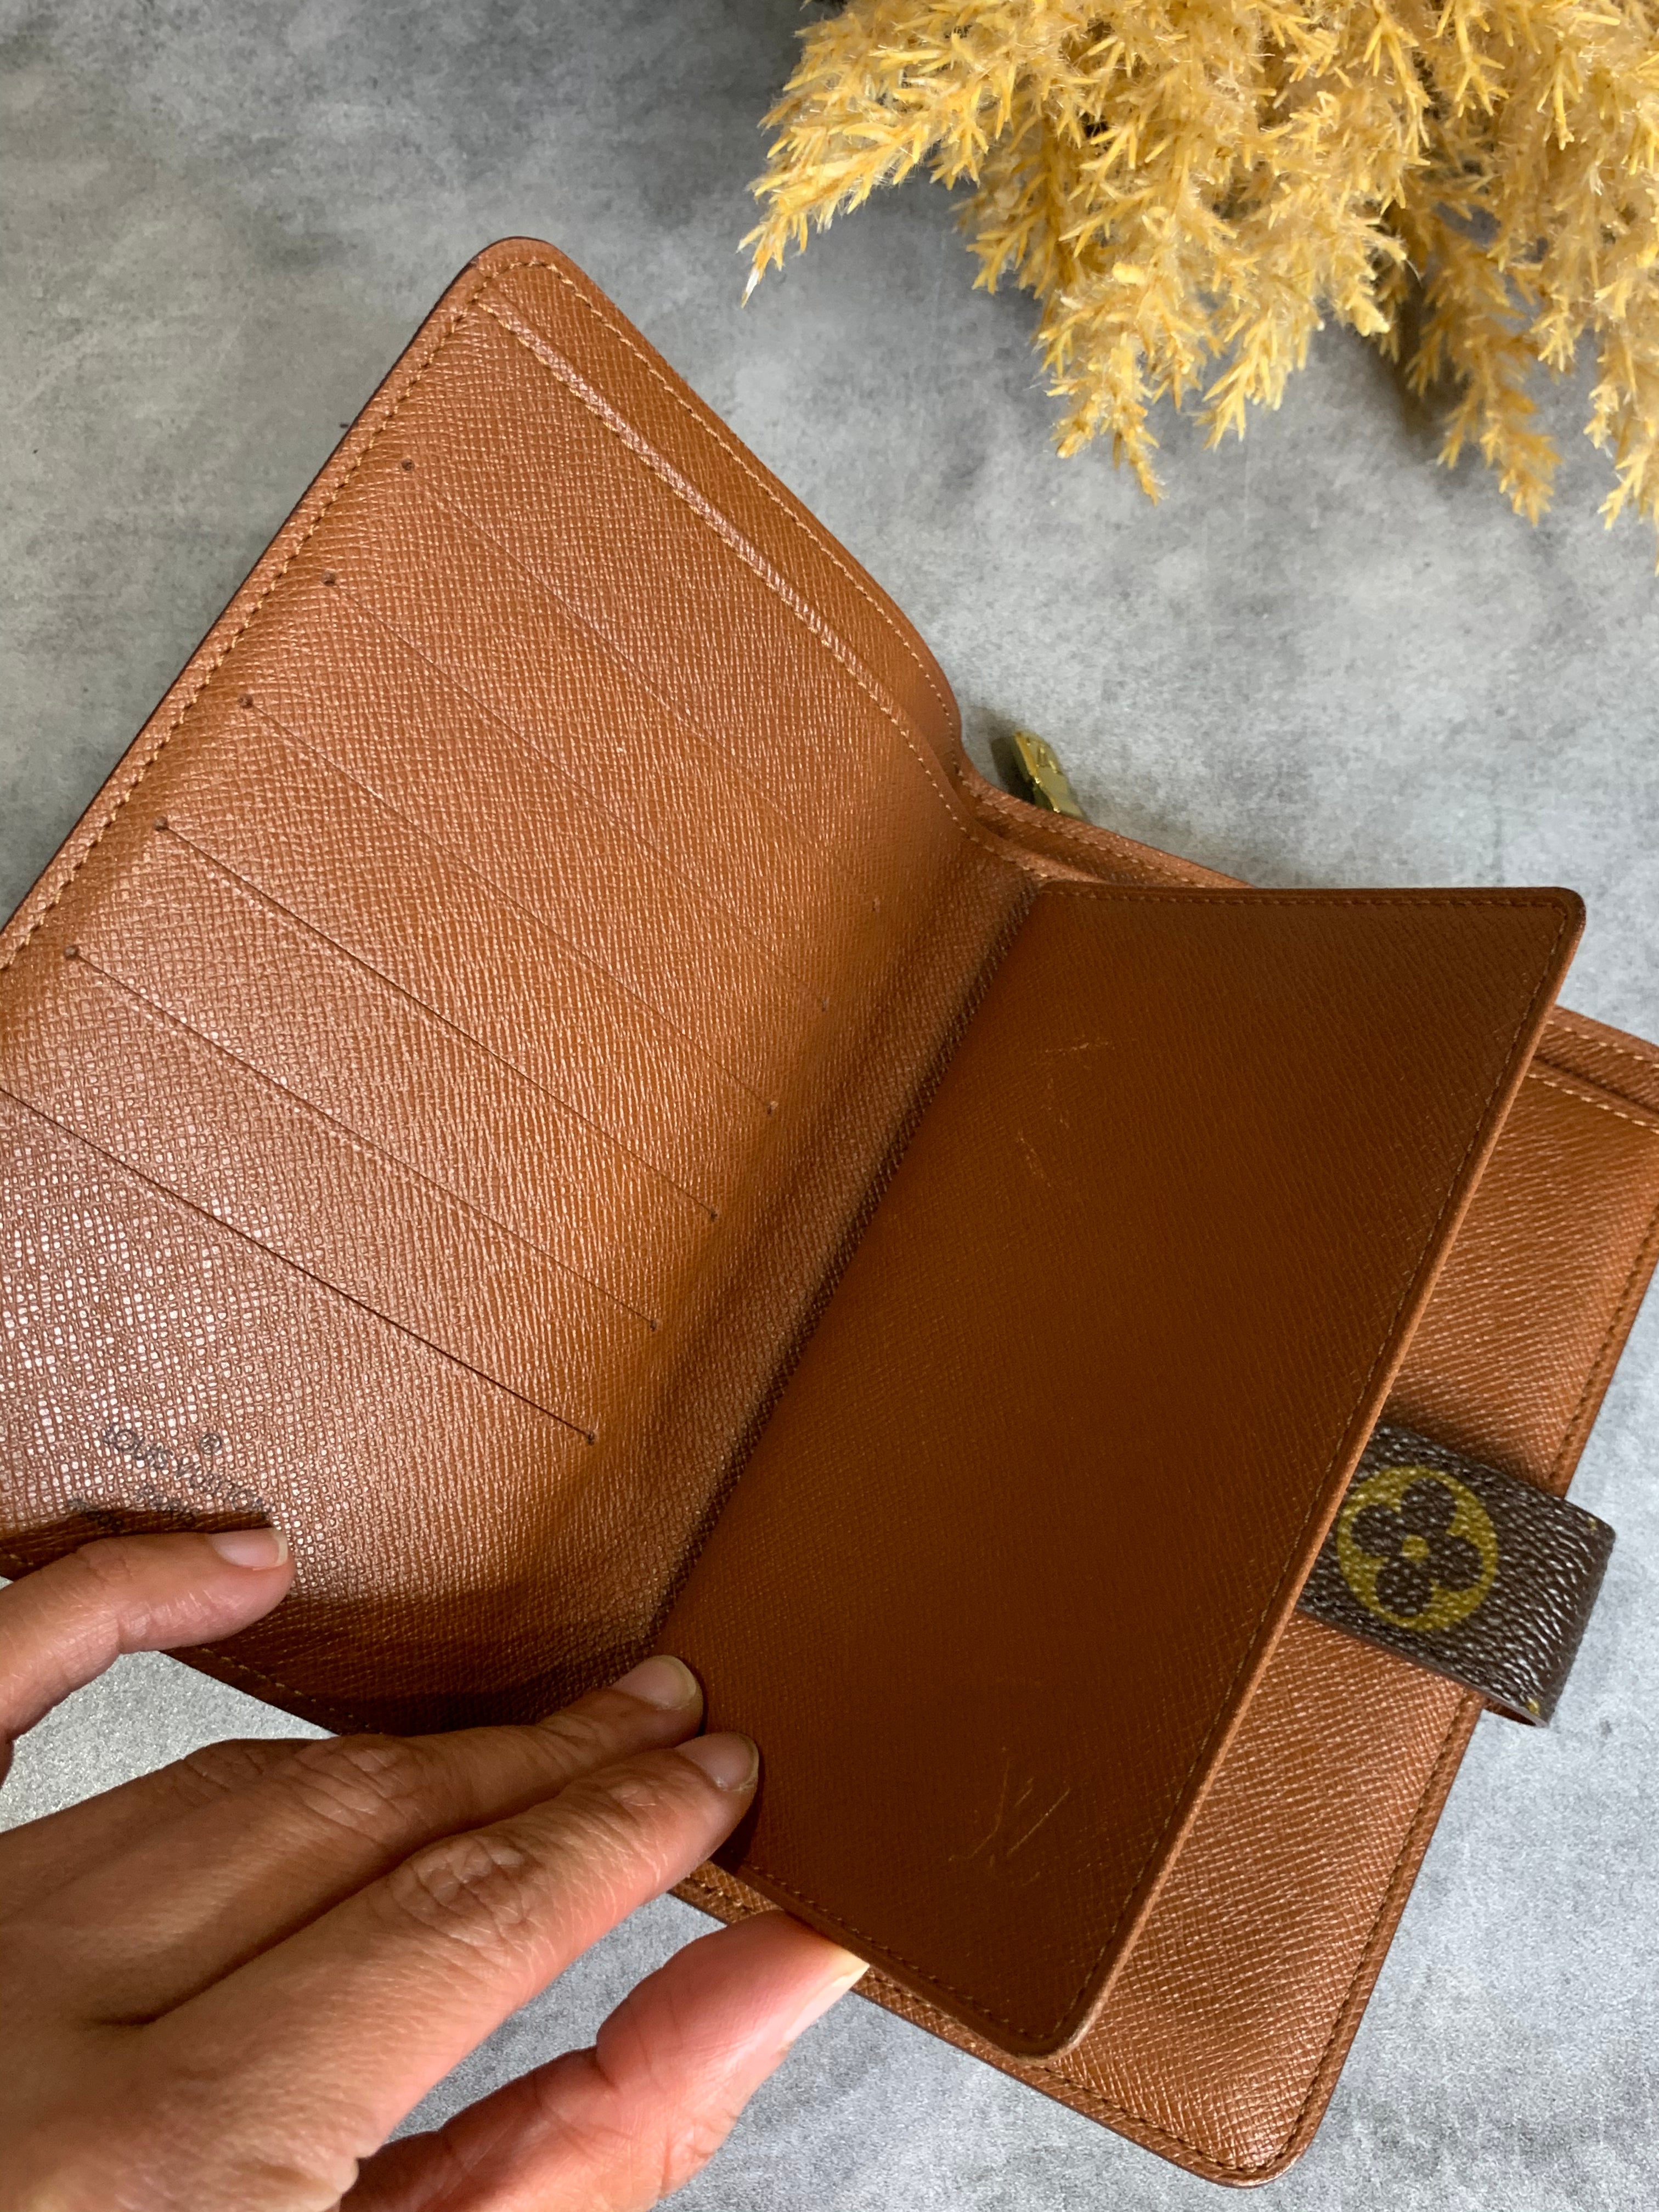 Louis Vuitton Zipped Passport Holder Wallet - A World Of Goods For You, LLC